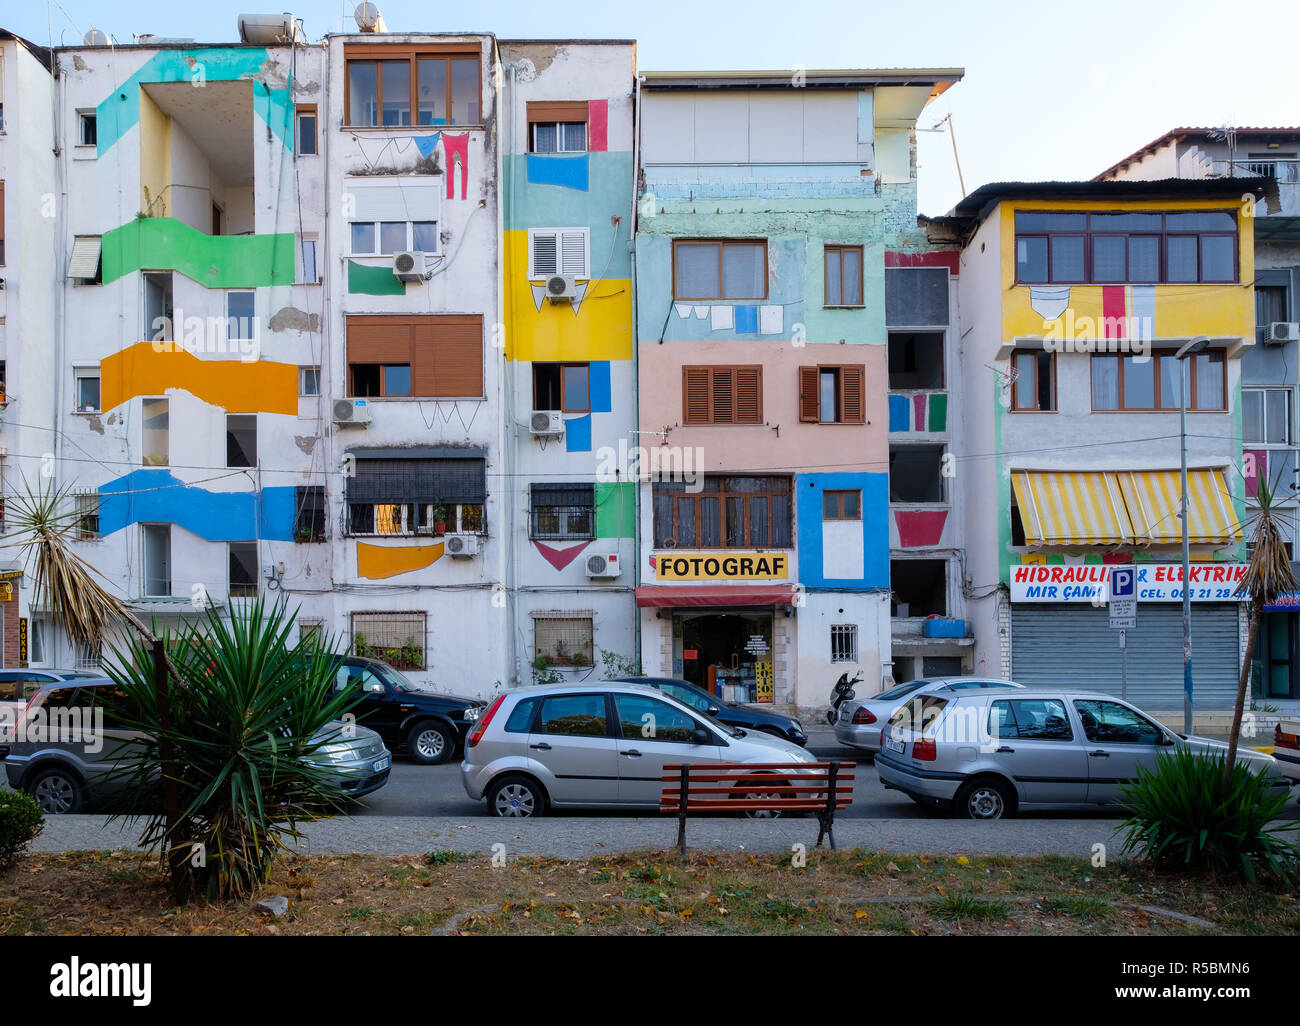 Les façades peintes de l'immeuble par les résidents de la ville de mode colorés font plus heureux Banque D'Images